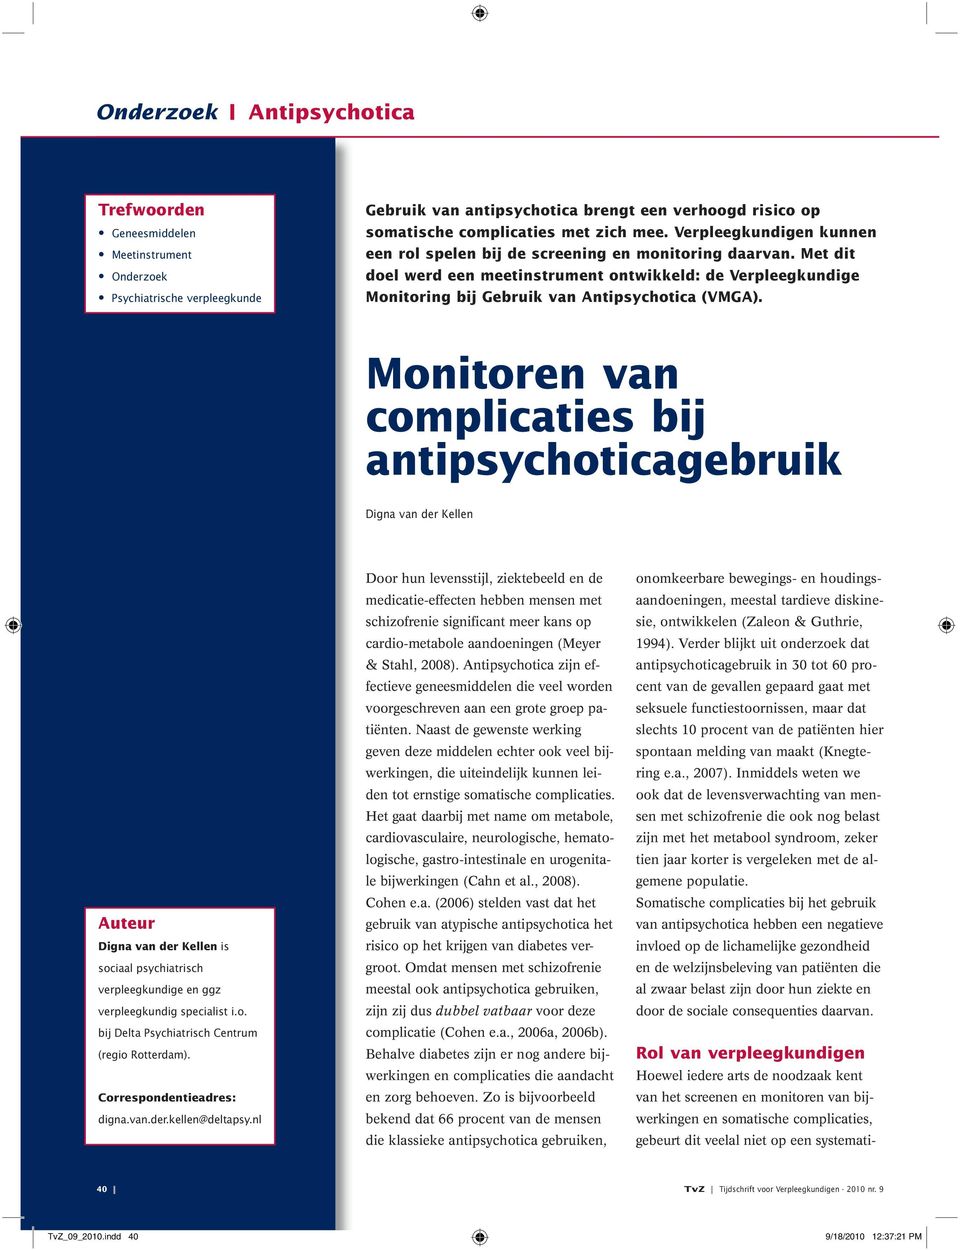 Monitoren van complicaties bij antipsychoticagebruik Digna van der Kellen Auteur Digna van der Kellen is sociaal psychiatrisch verpleegkundige en ggz verpleegkundig specialist i.o. bij Delta Psychiatrisch Centrum (regio Rotterdam).